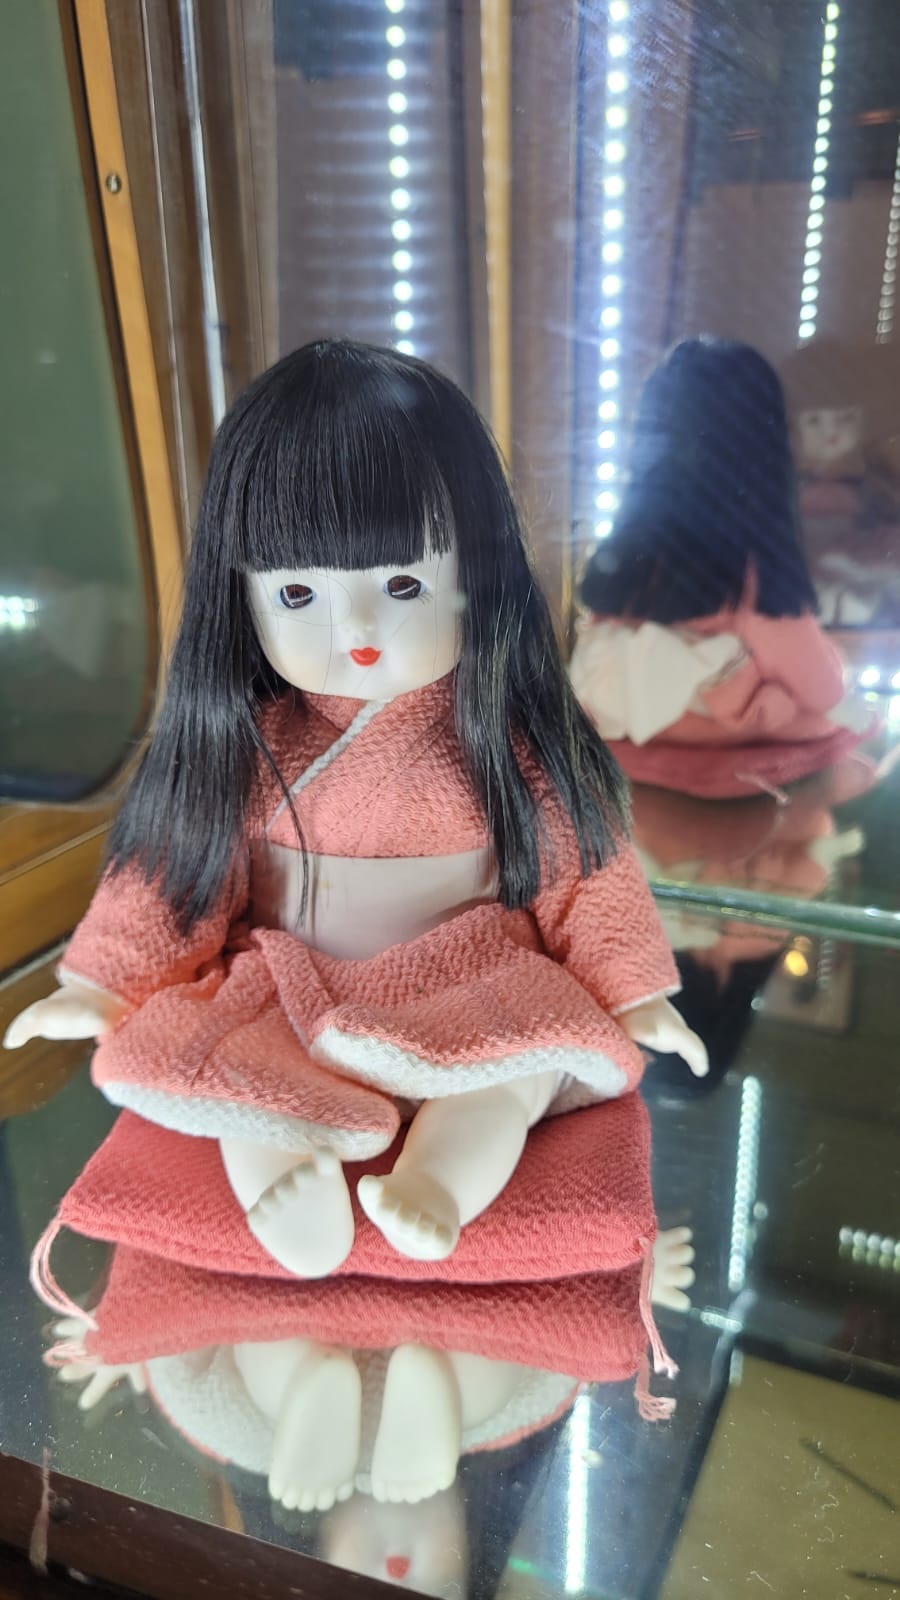 TRADICIÓN. La historia de las muñecas japonesas se remonta a tiempos muy primitivos, y aún hoy se les atribuyen diferentes significados y funciones.